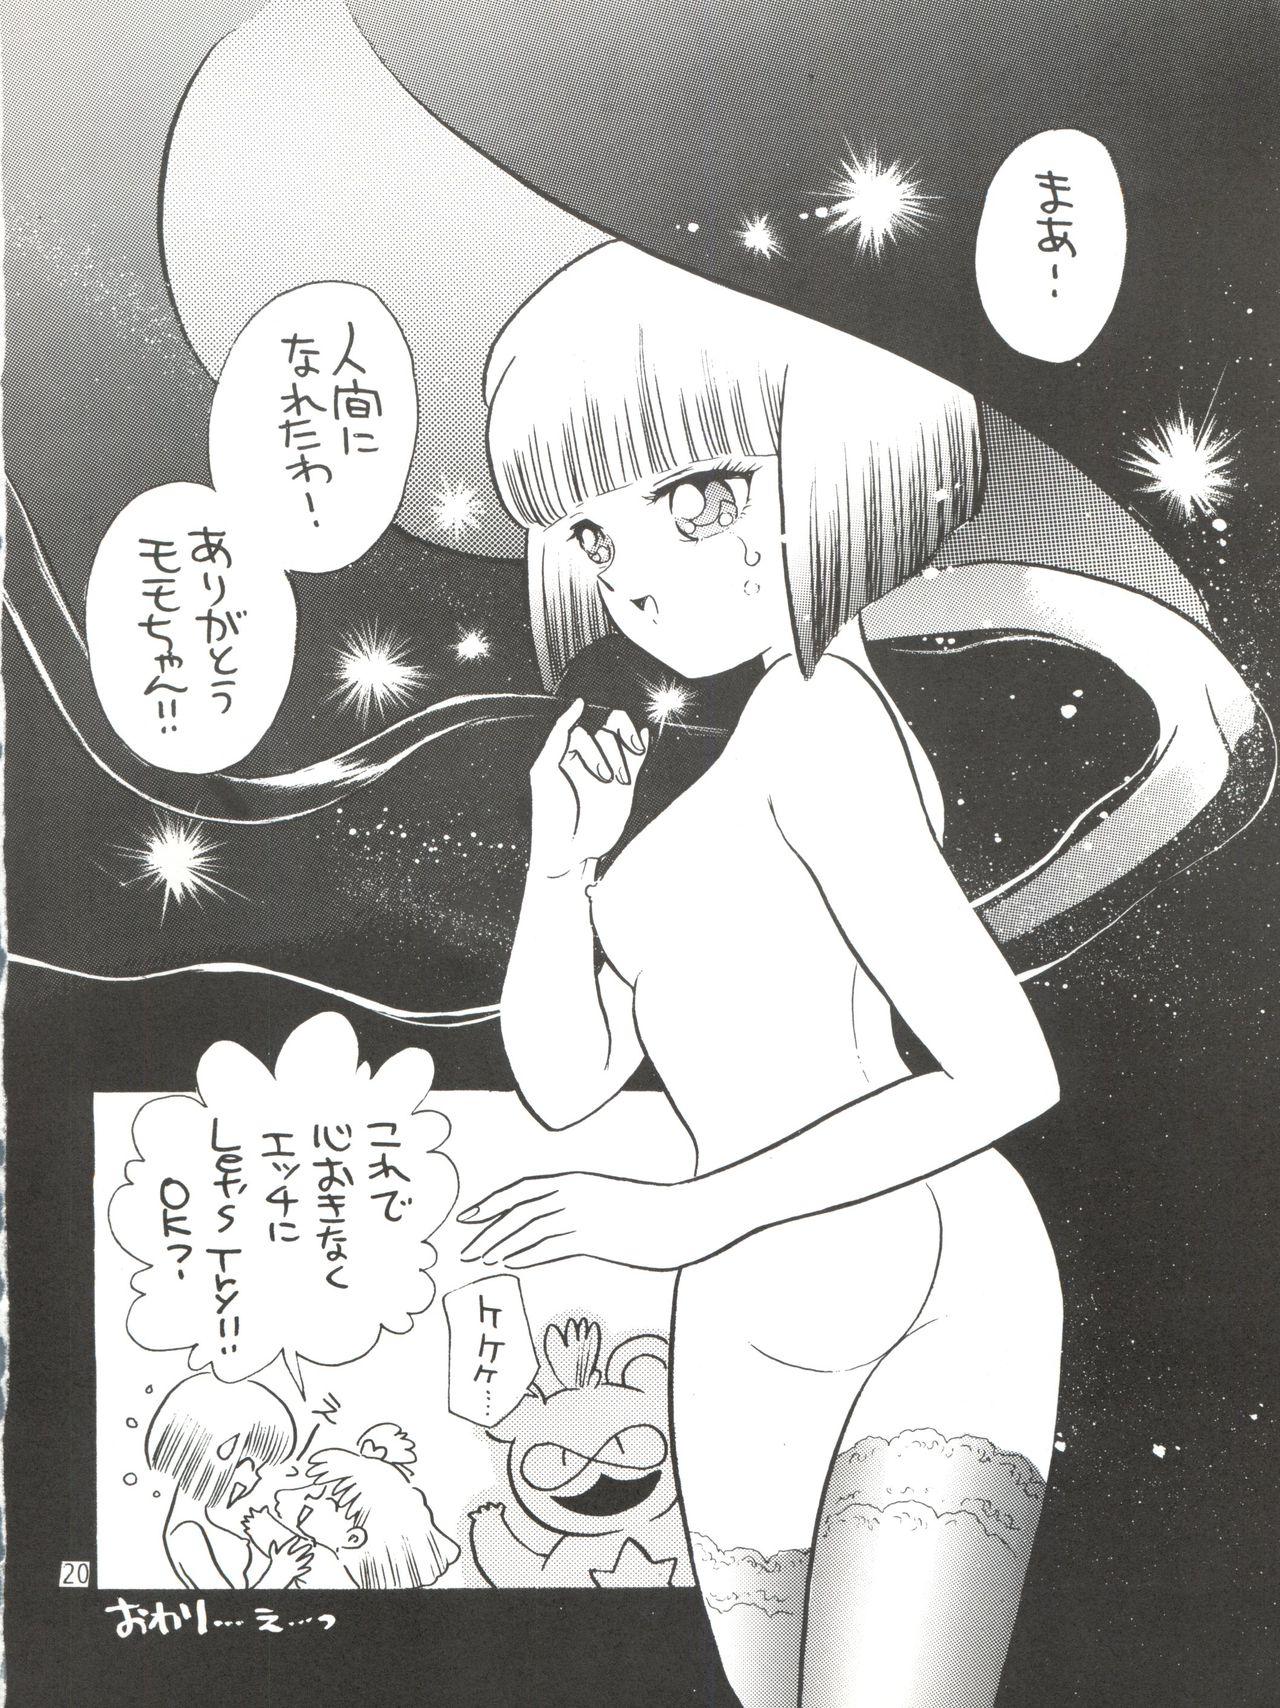 [紫電会 (お梅) MOMO POWER (Mahou no Princess Minky Momo) 19